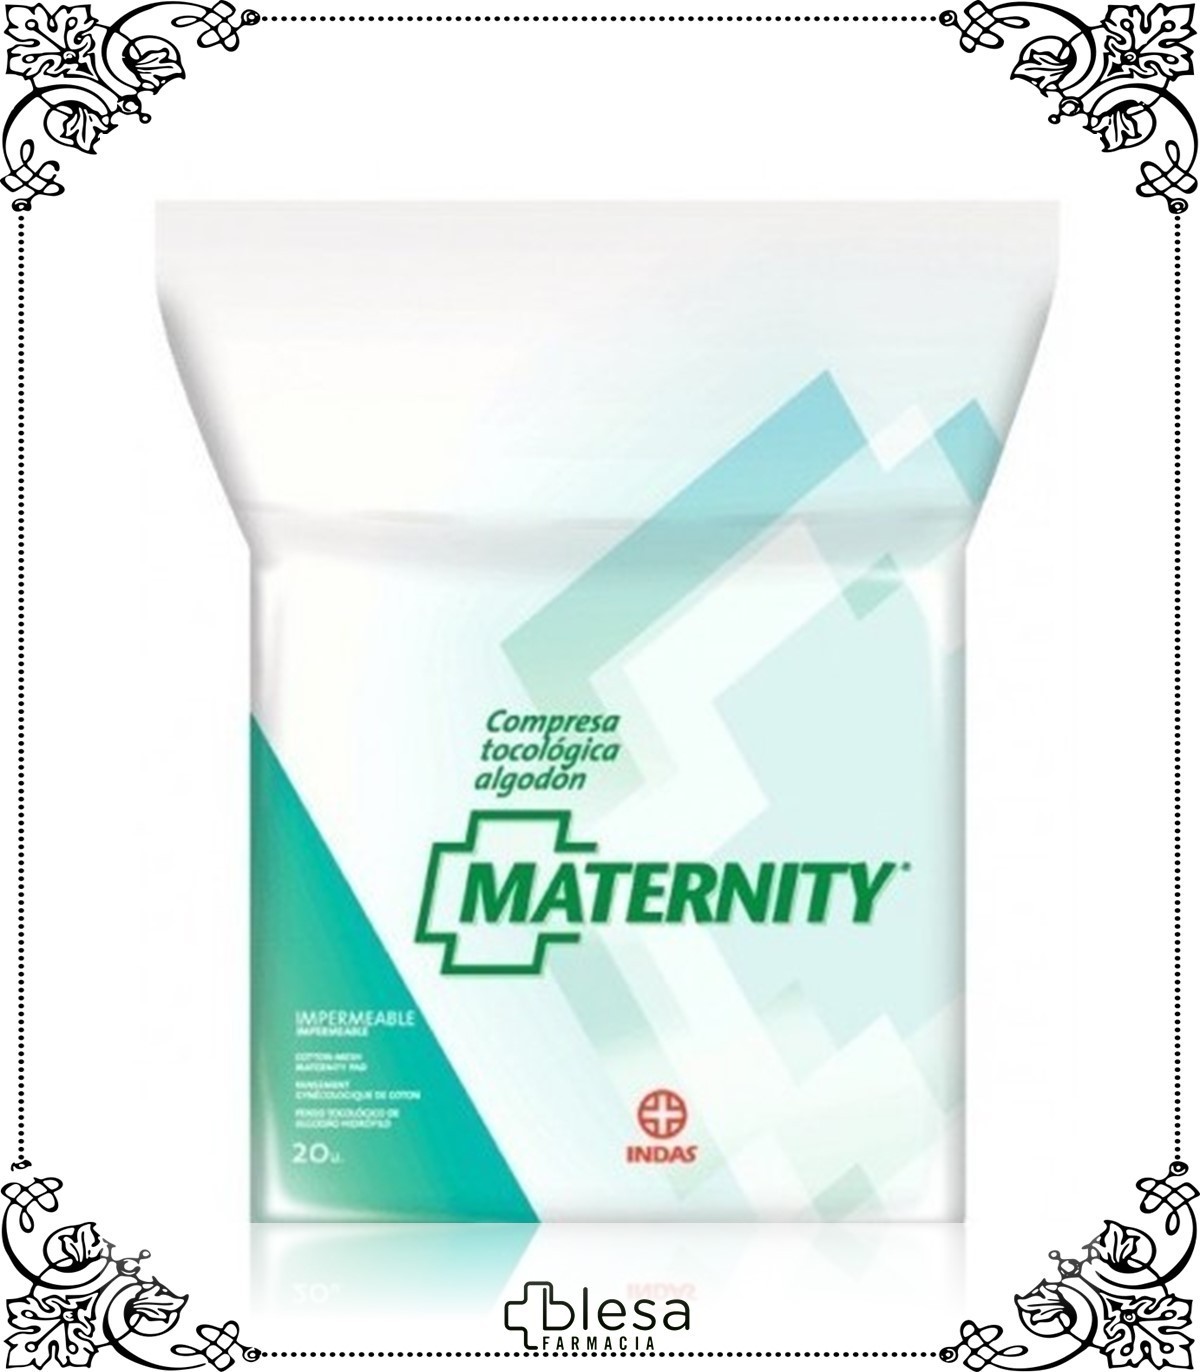 Indas maternity compresa de algodón 20 unidades - Blesa Farmacia